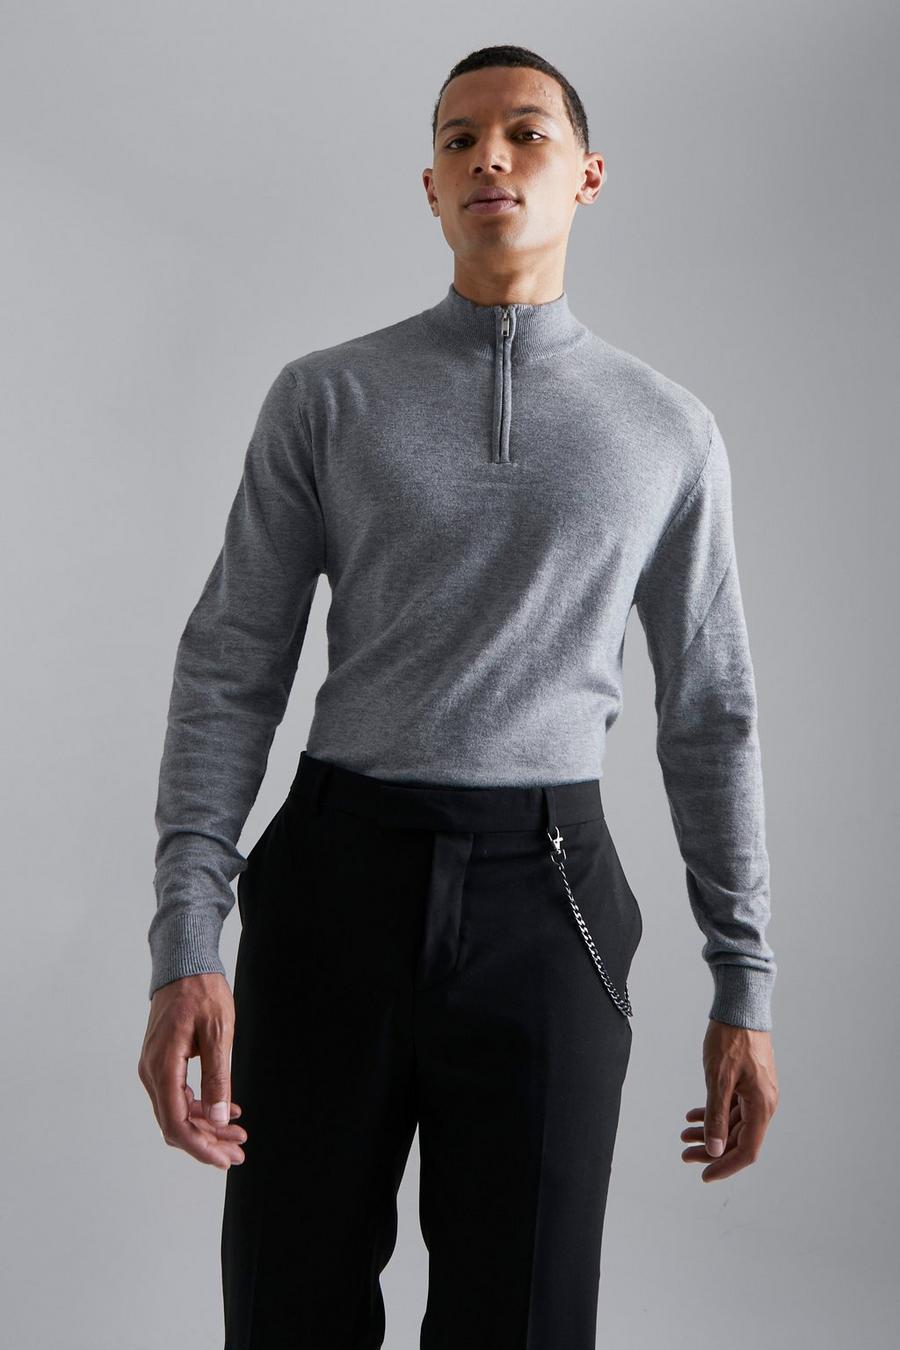 סלע אפור grey סוודר עם צווארון משפך ורוכסן חלקי, לגברים גבוהים